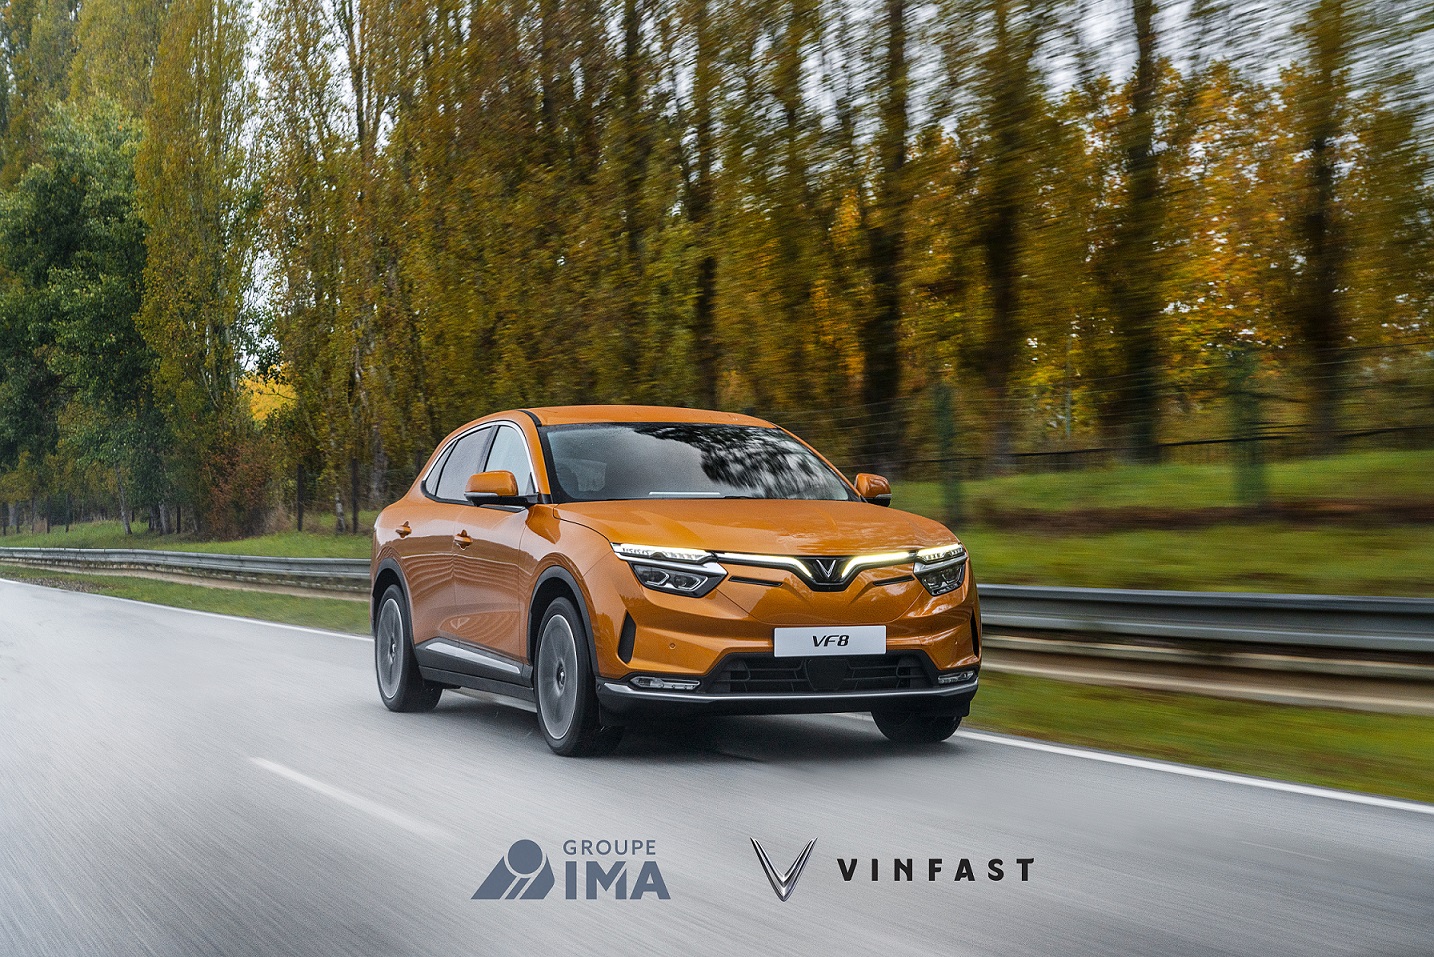 VinFast lựa chọn IMA làm đối tác cung cấp “Dịch vụ hỗ trợ trên đường” cho khách hàng tại châu Âu